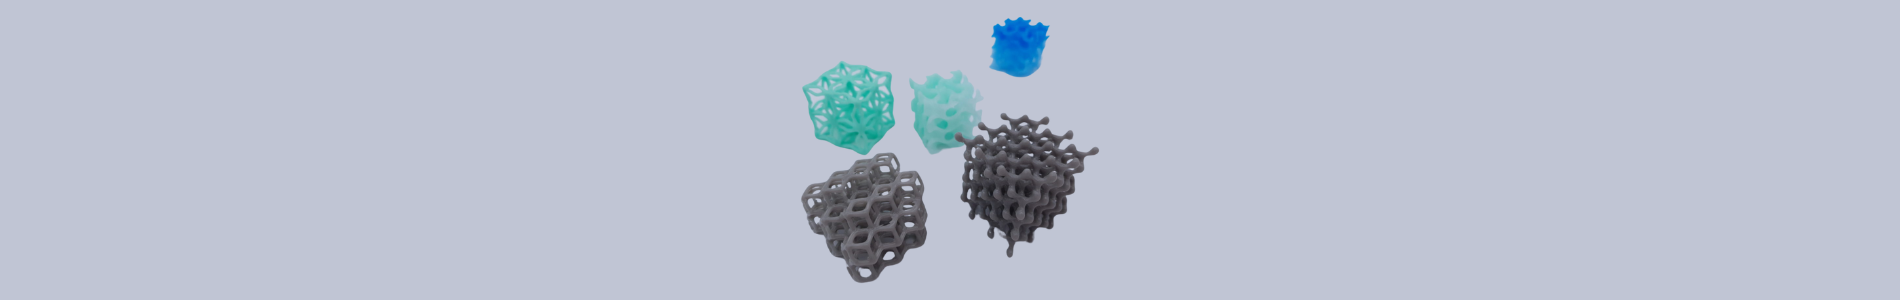 Exemple de prototypage d'impression 3D silicone